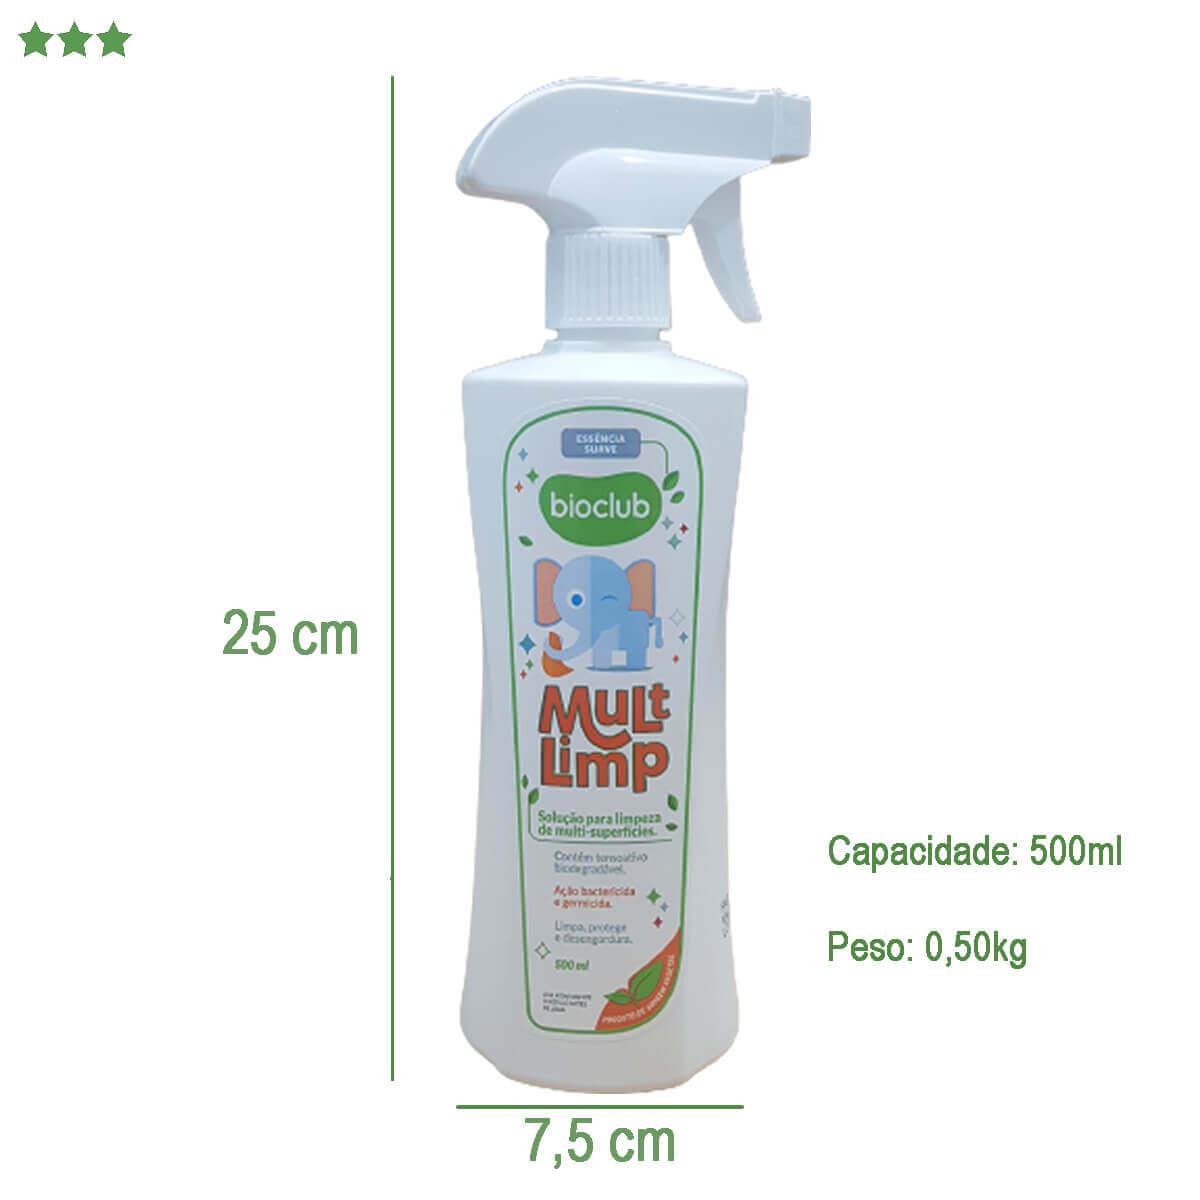 Spray Mult Limpeza de Superfícies Limp Bioclub